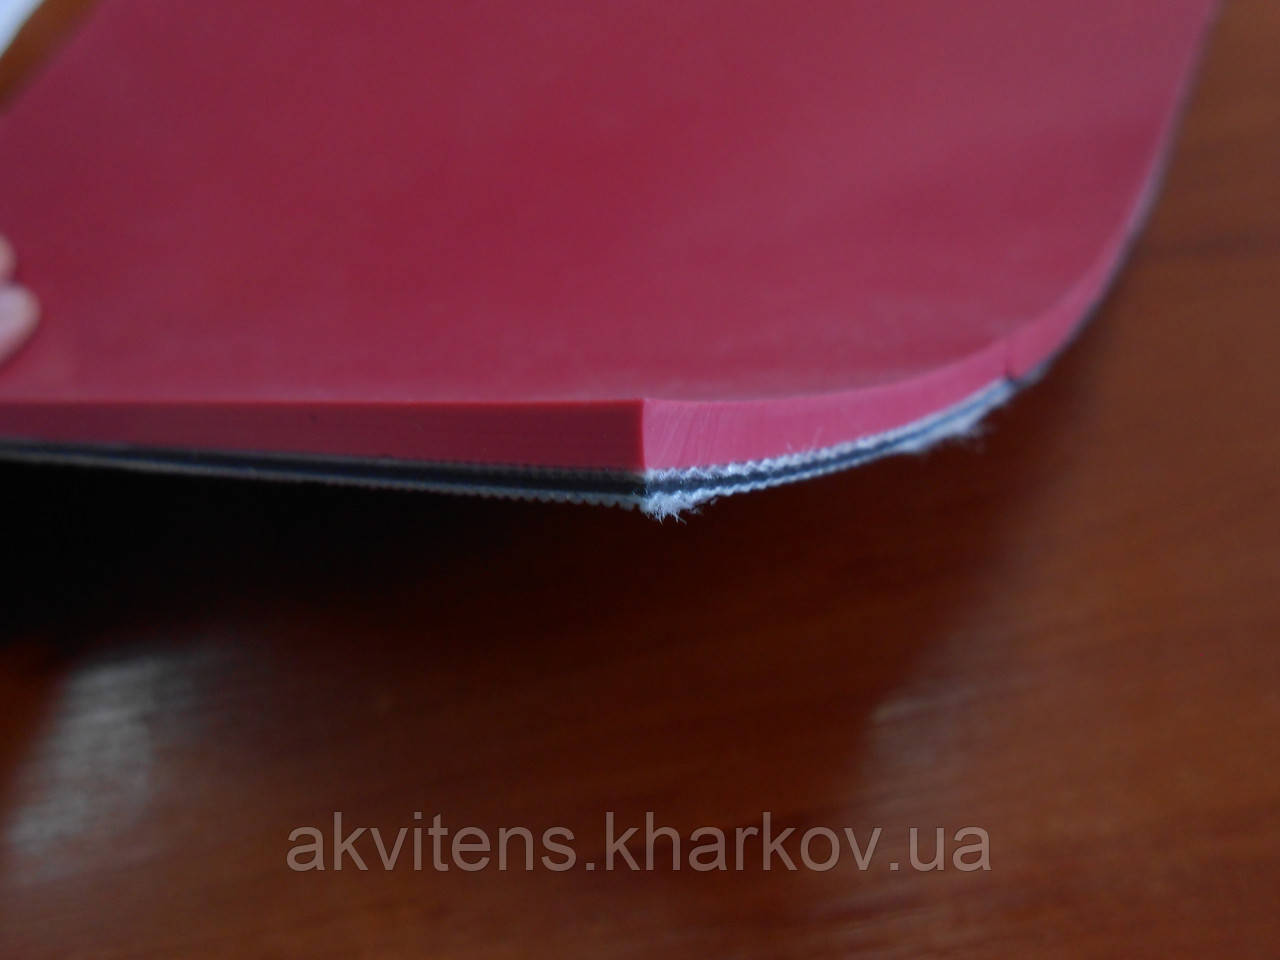 Стрічка ПВХ, Робоча поверхня - зносостійке покриття з ТРВ (термопластичний матеріал червоного кольору.